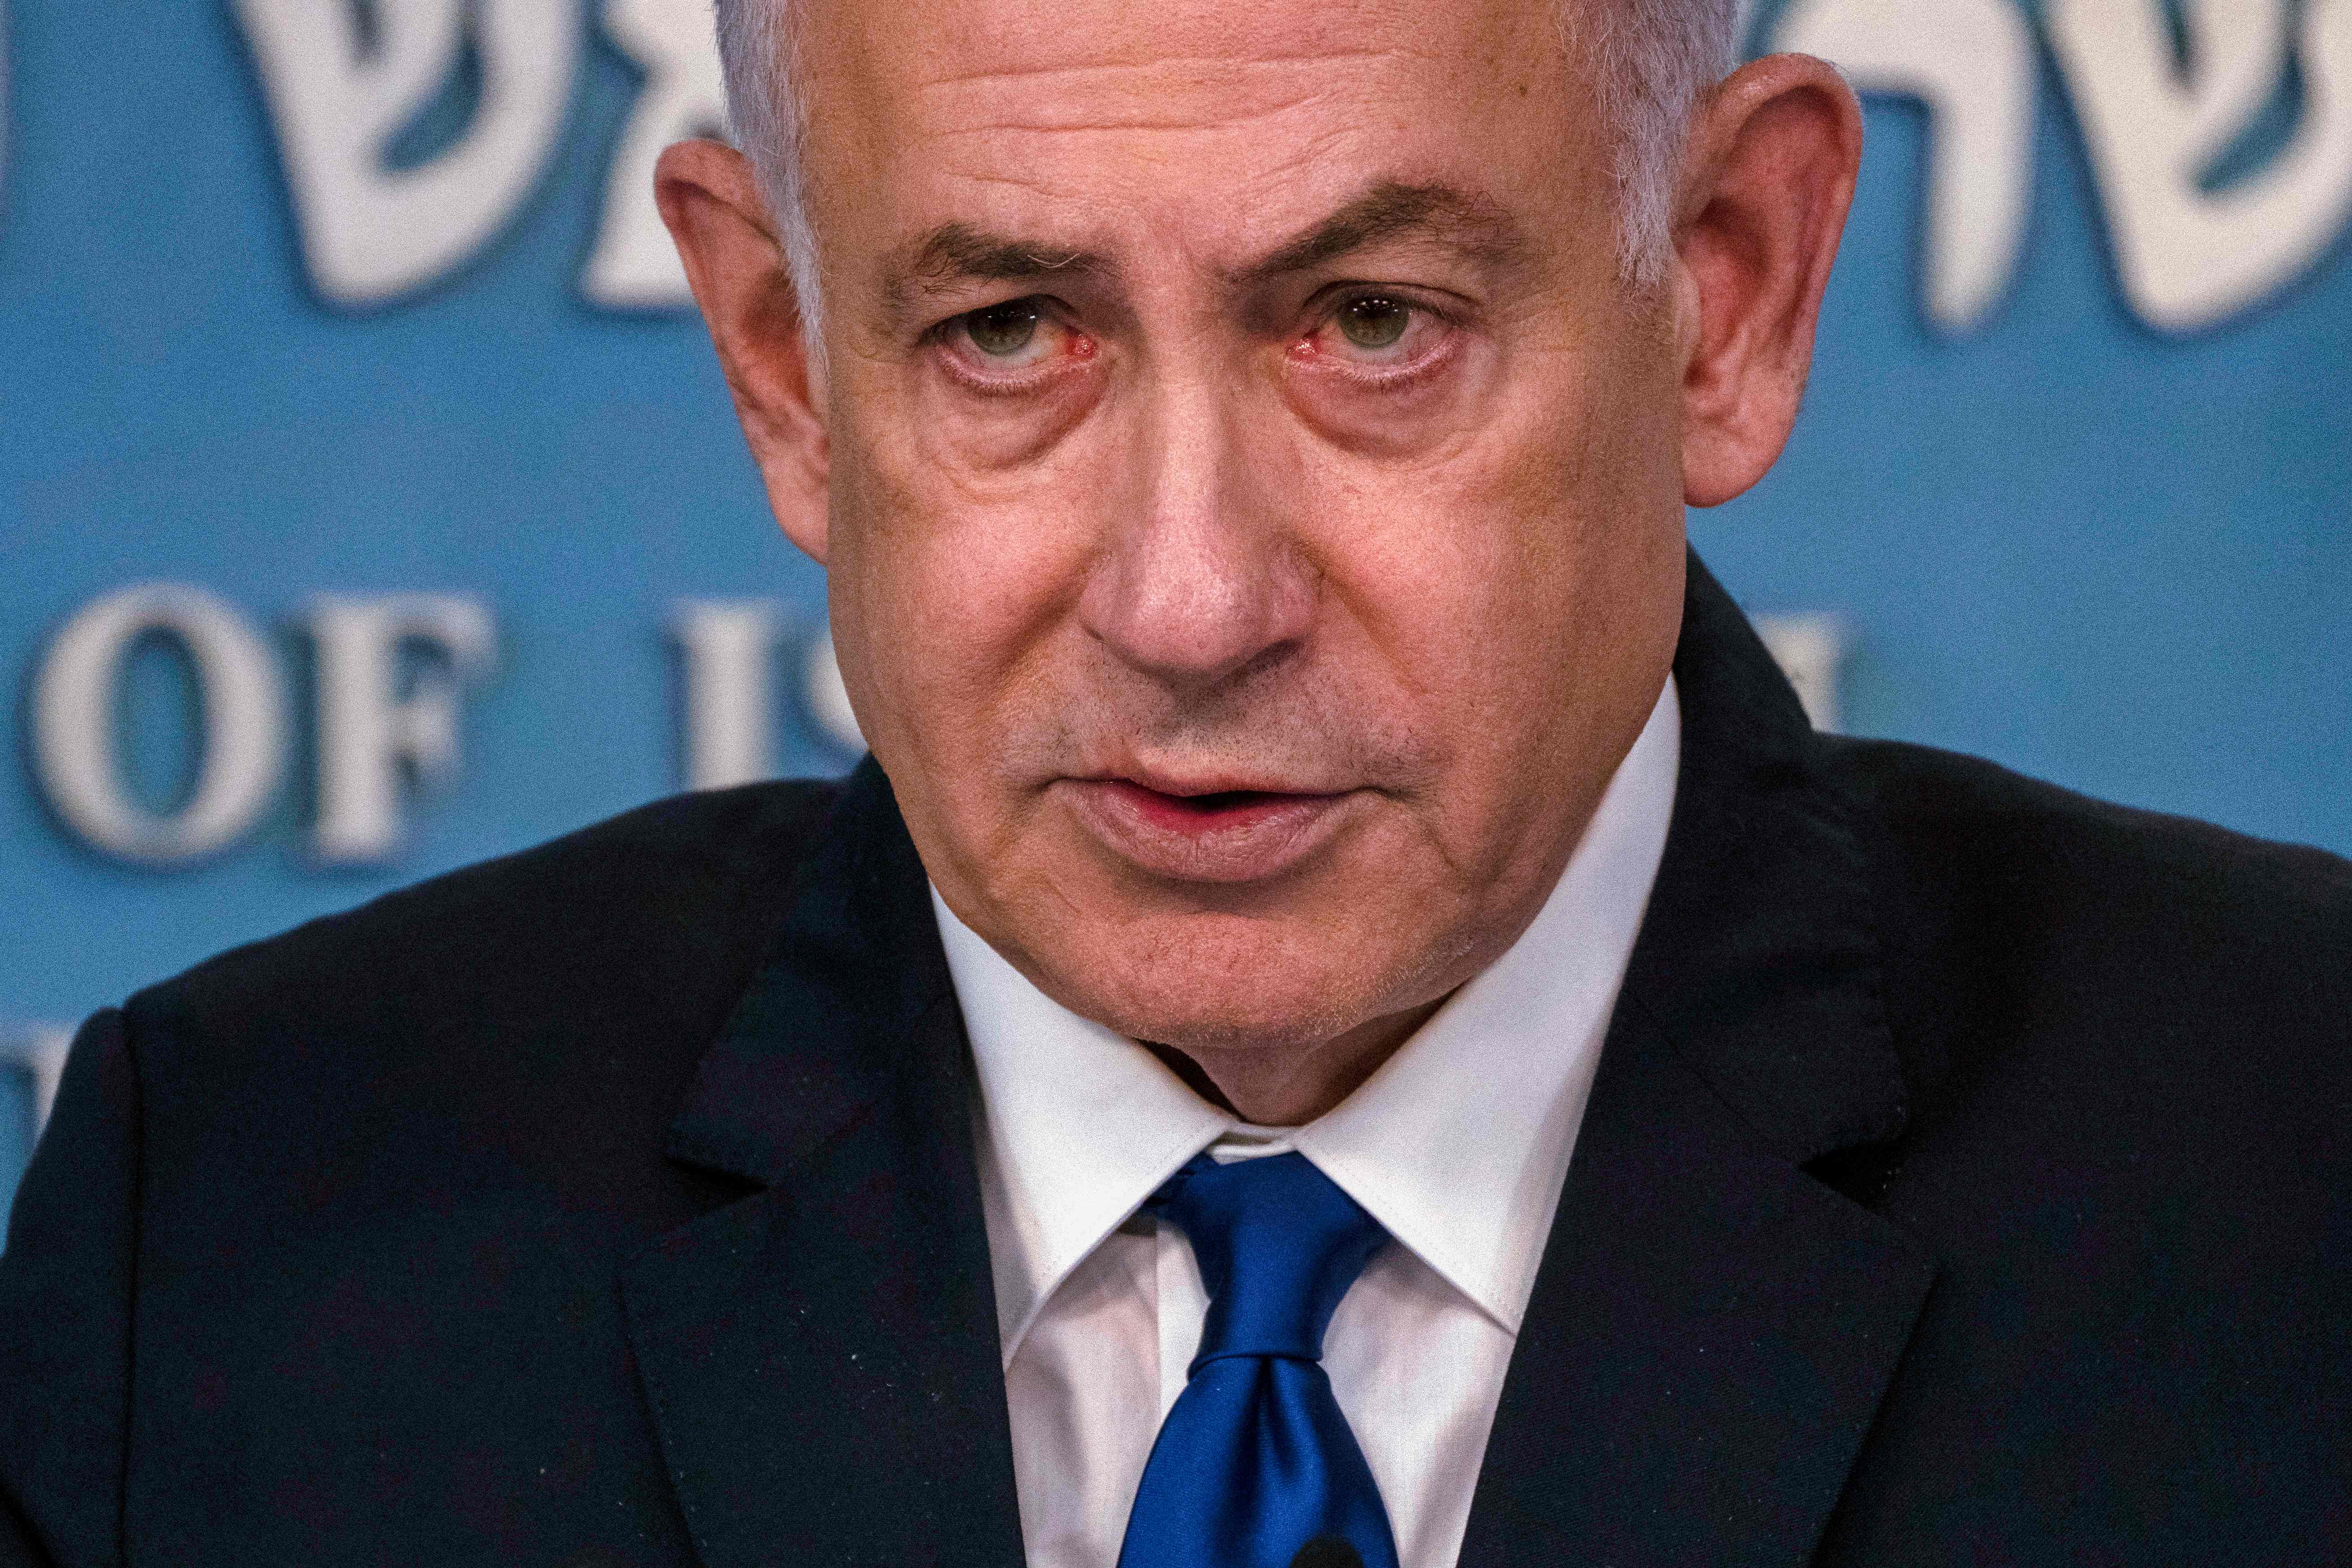 El primer ministro israelí, Benjamin Netanyahu, reafirmó la autonomía de Israel en cuanto a su estrategia al responder al ataque de Irán. (Foto Prensa Libre: AFP)